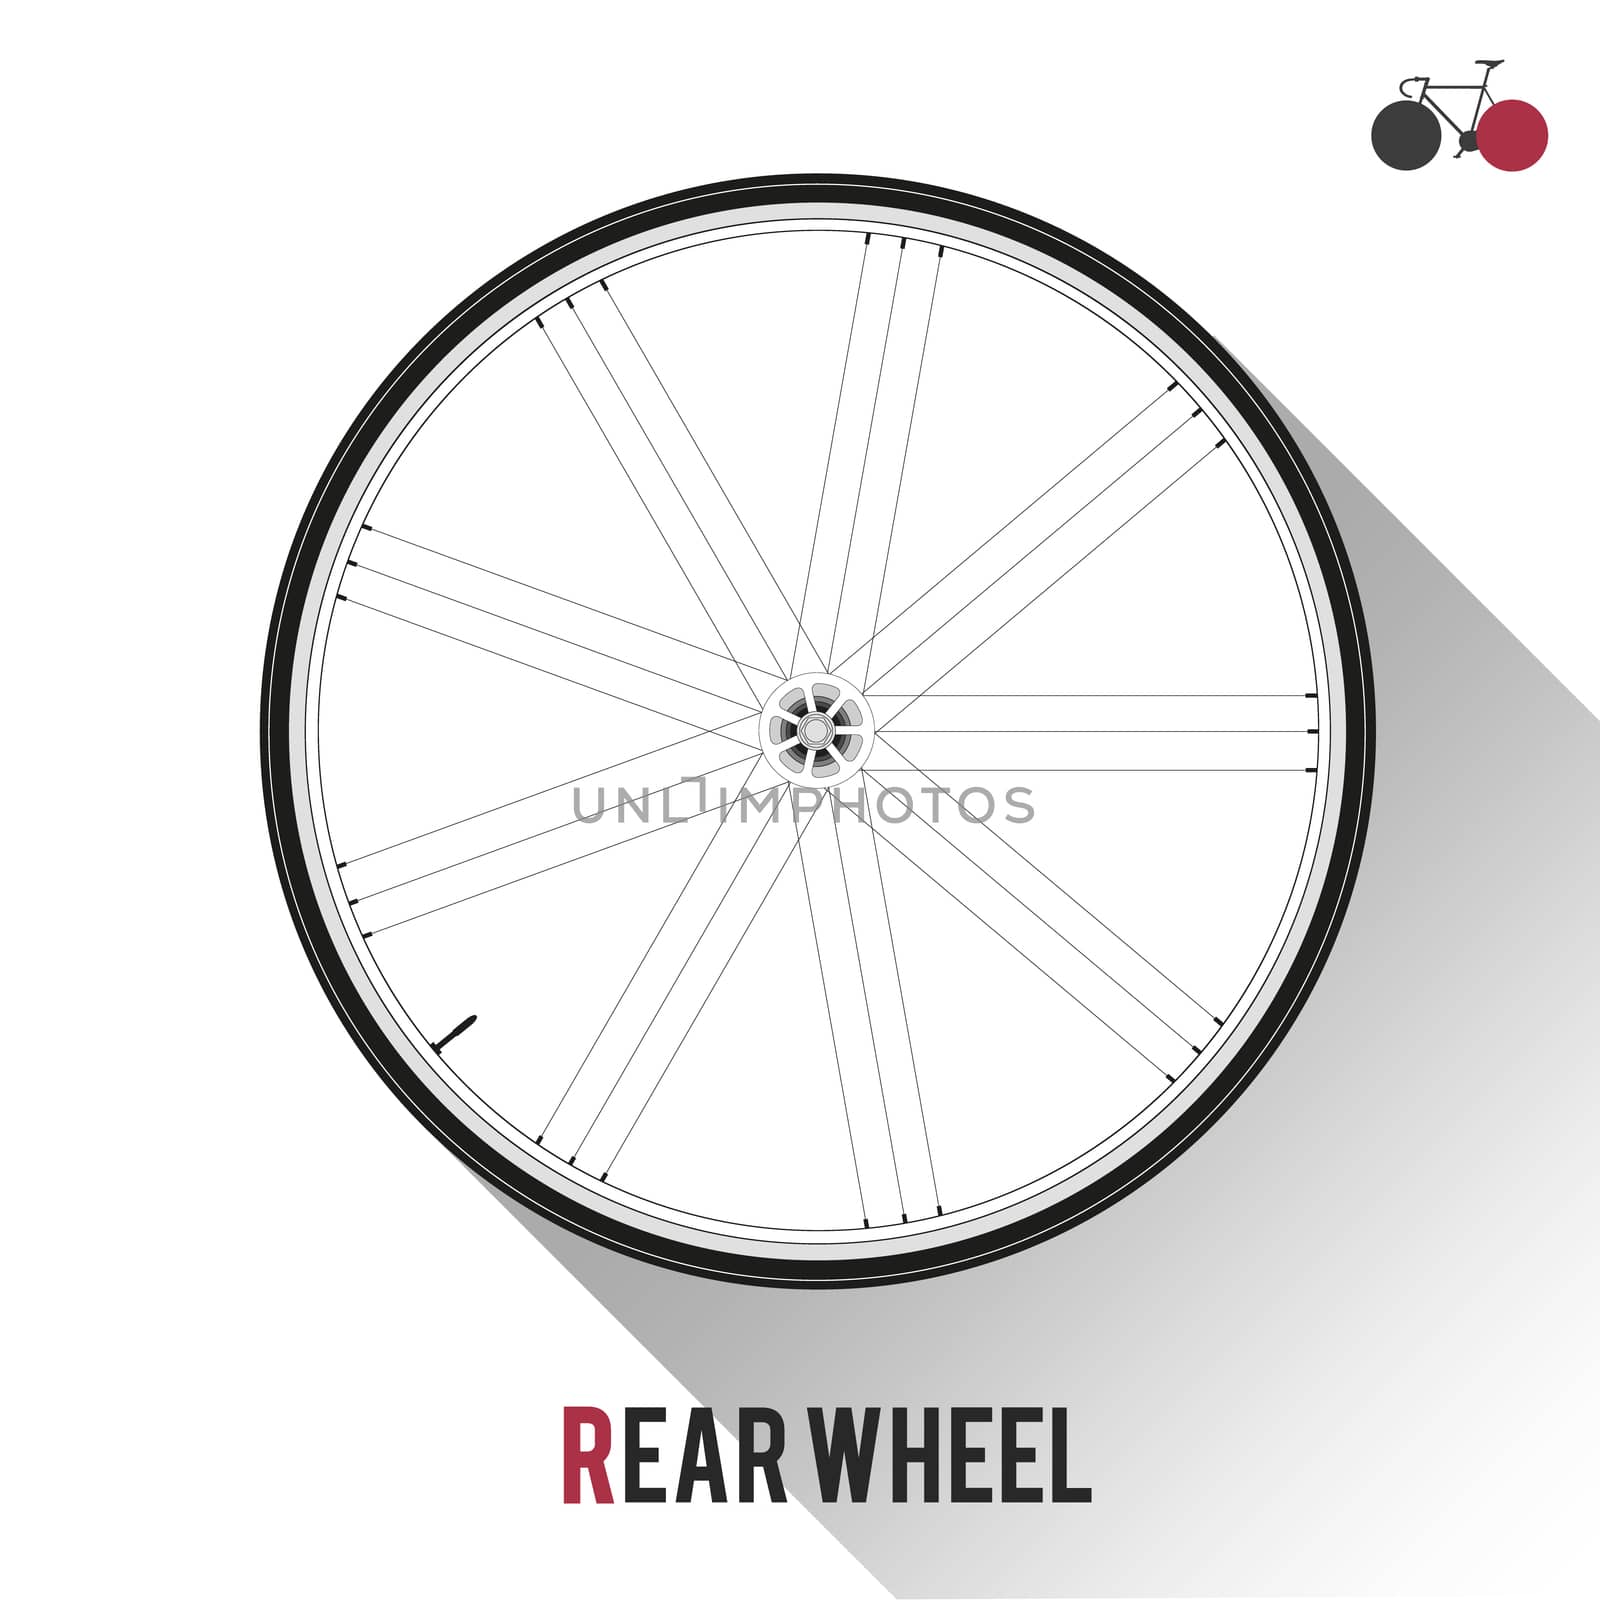 Bike Rear Wheel by landscafe